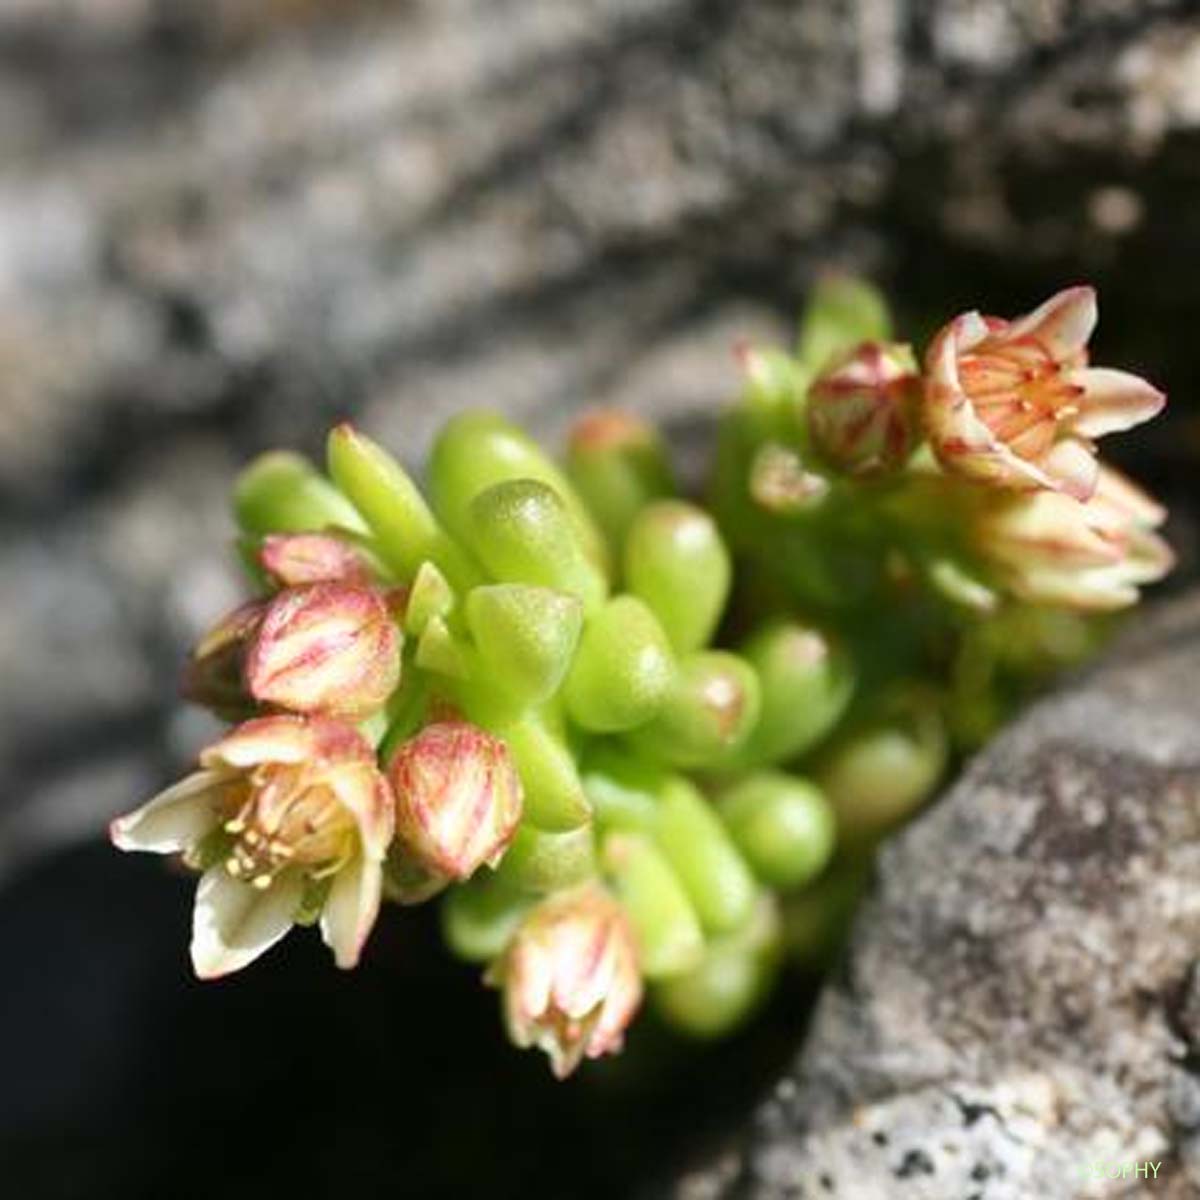 Orpin noirâtre - Sedum atratum subsp. atratum